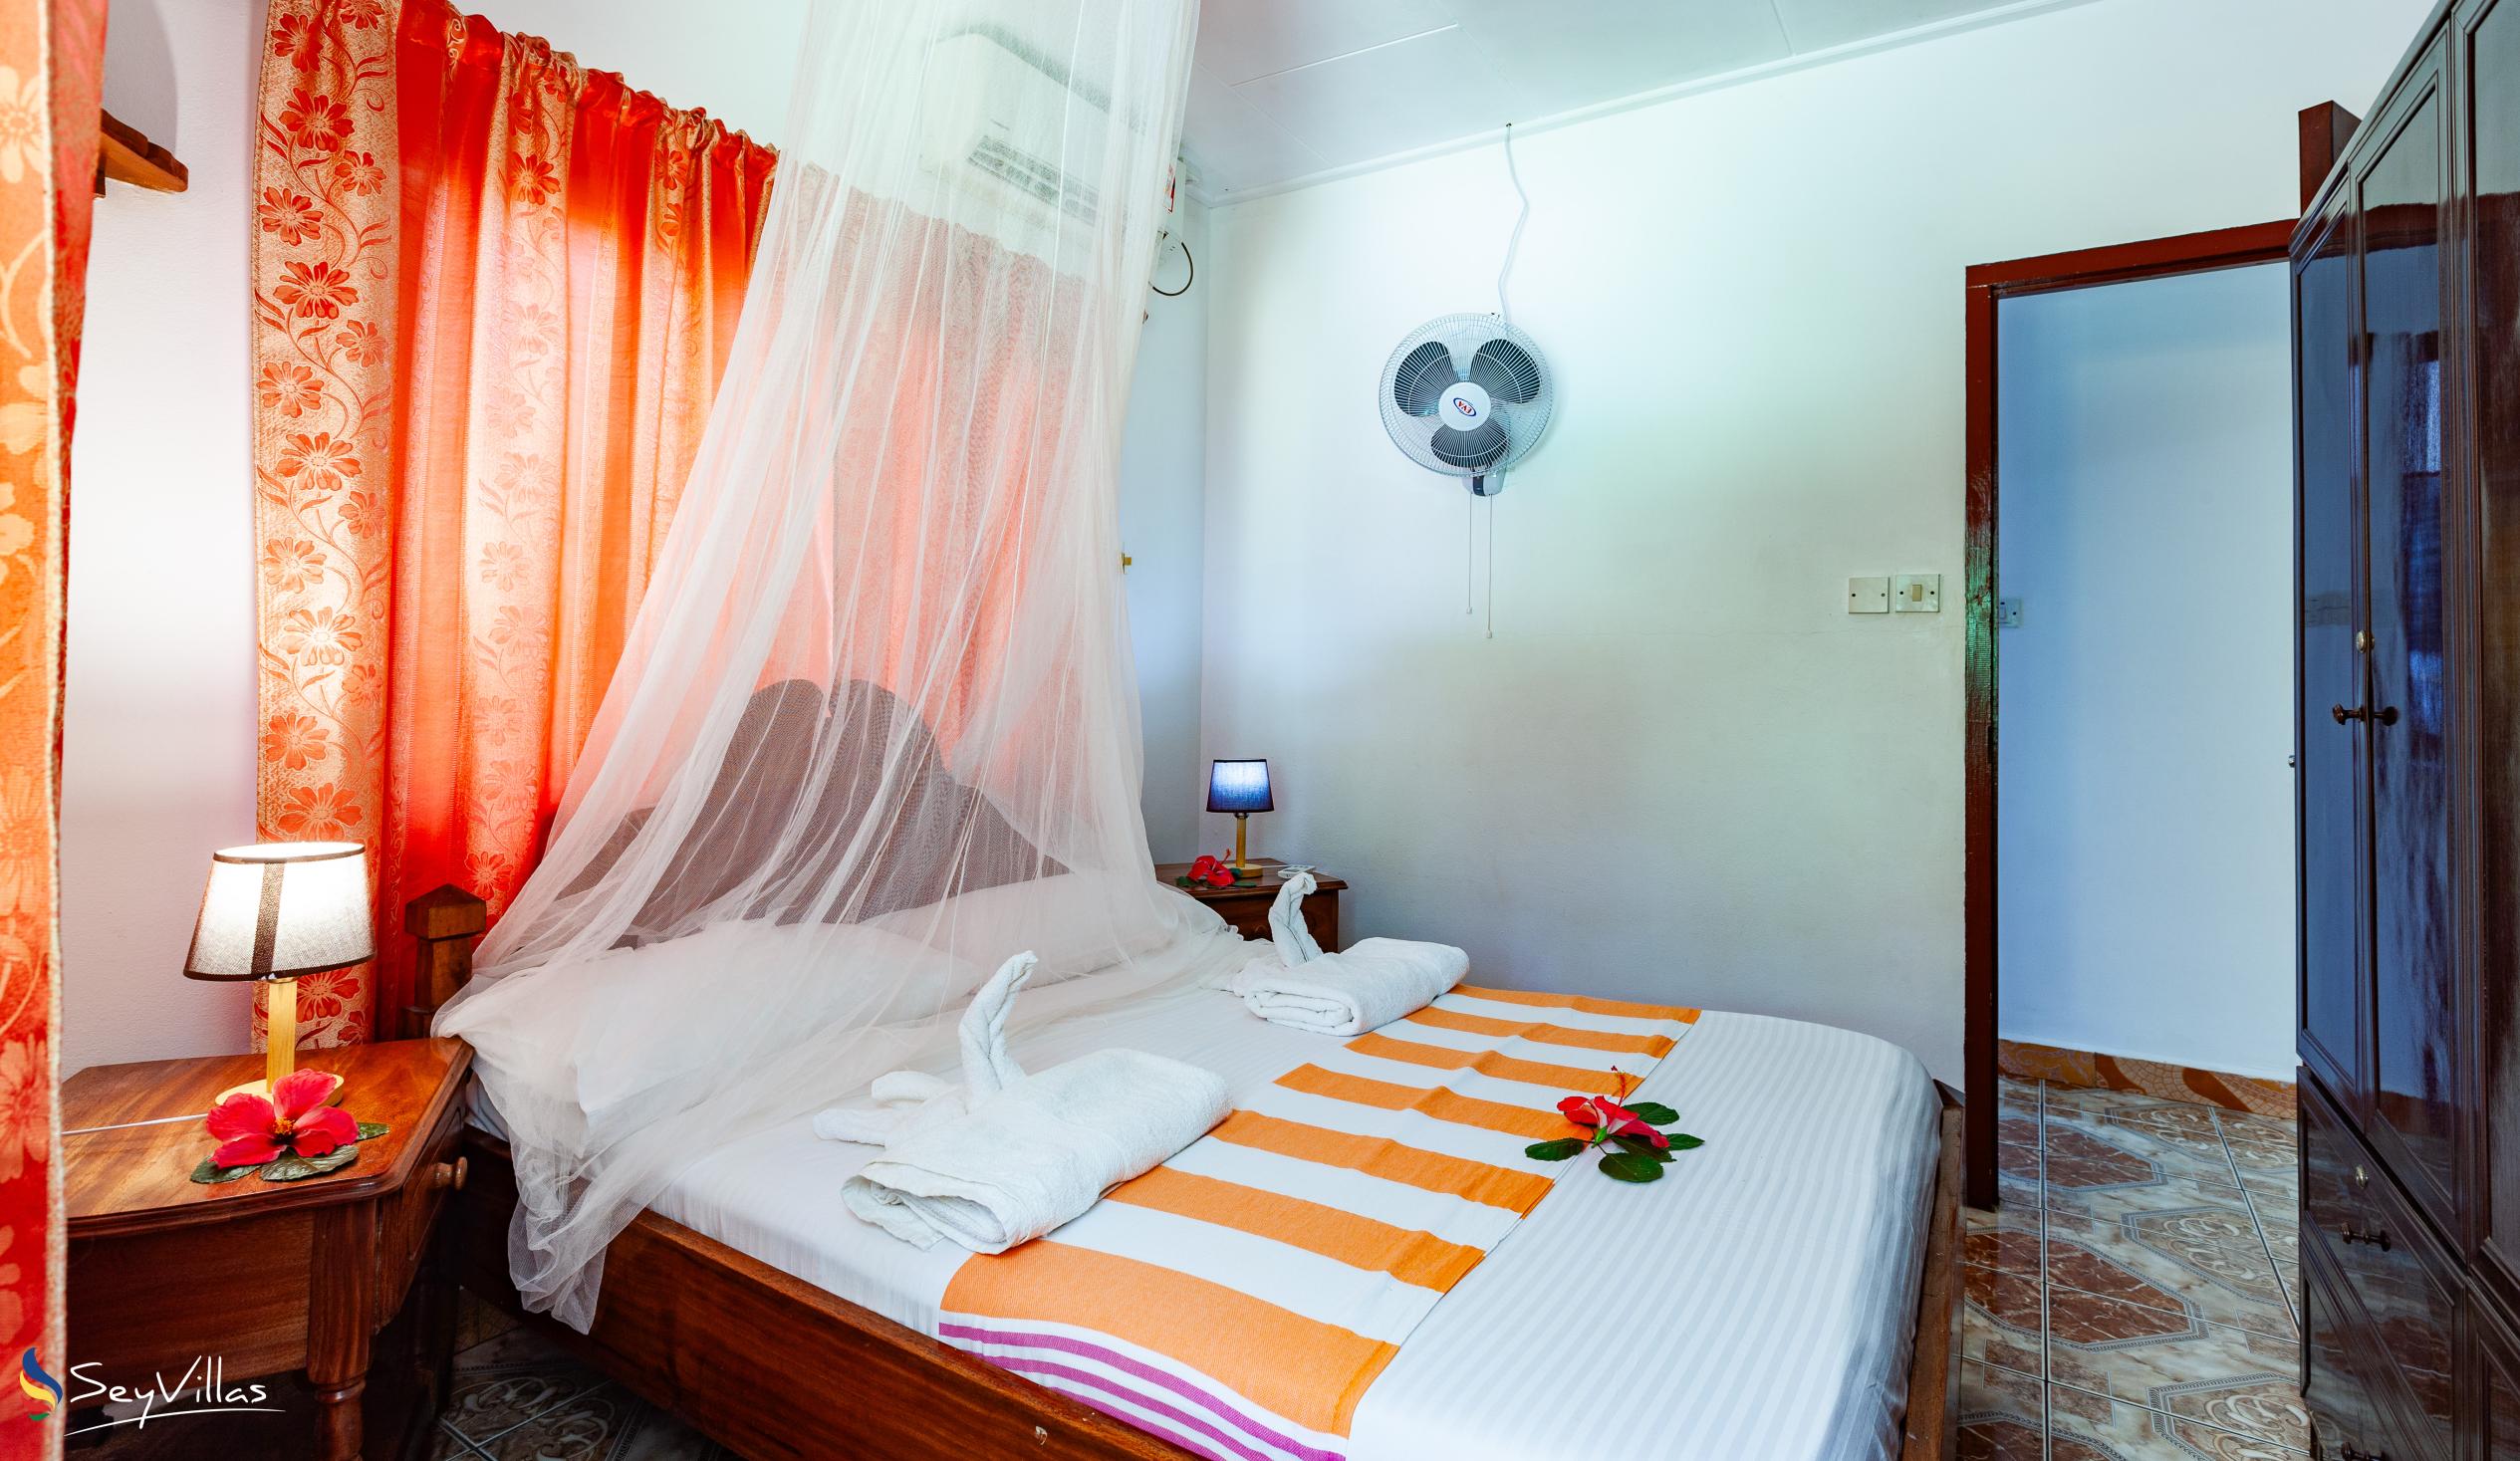 Photo 45: Dan Kazou - 2-Bedroom Apartment - La Digue (Seychelles)